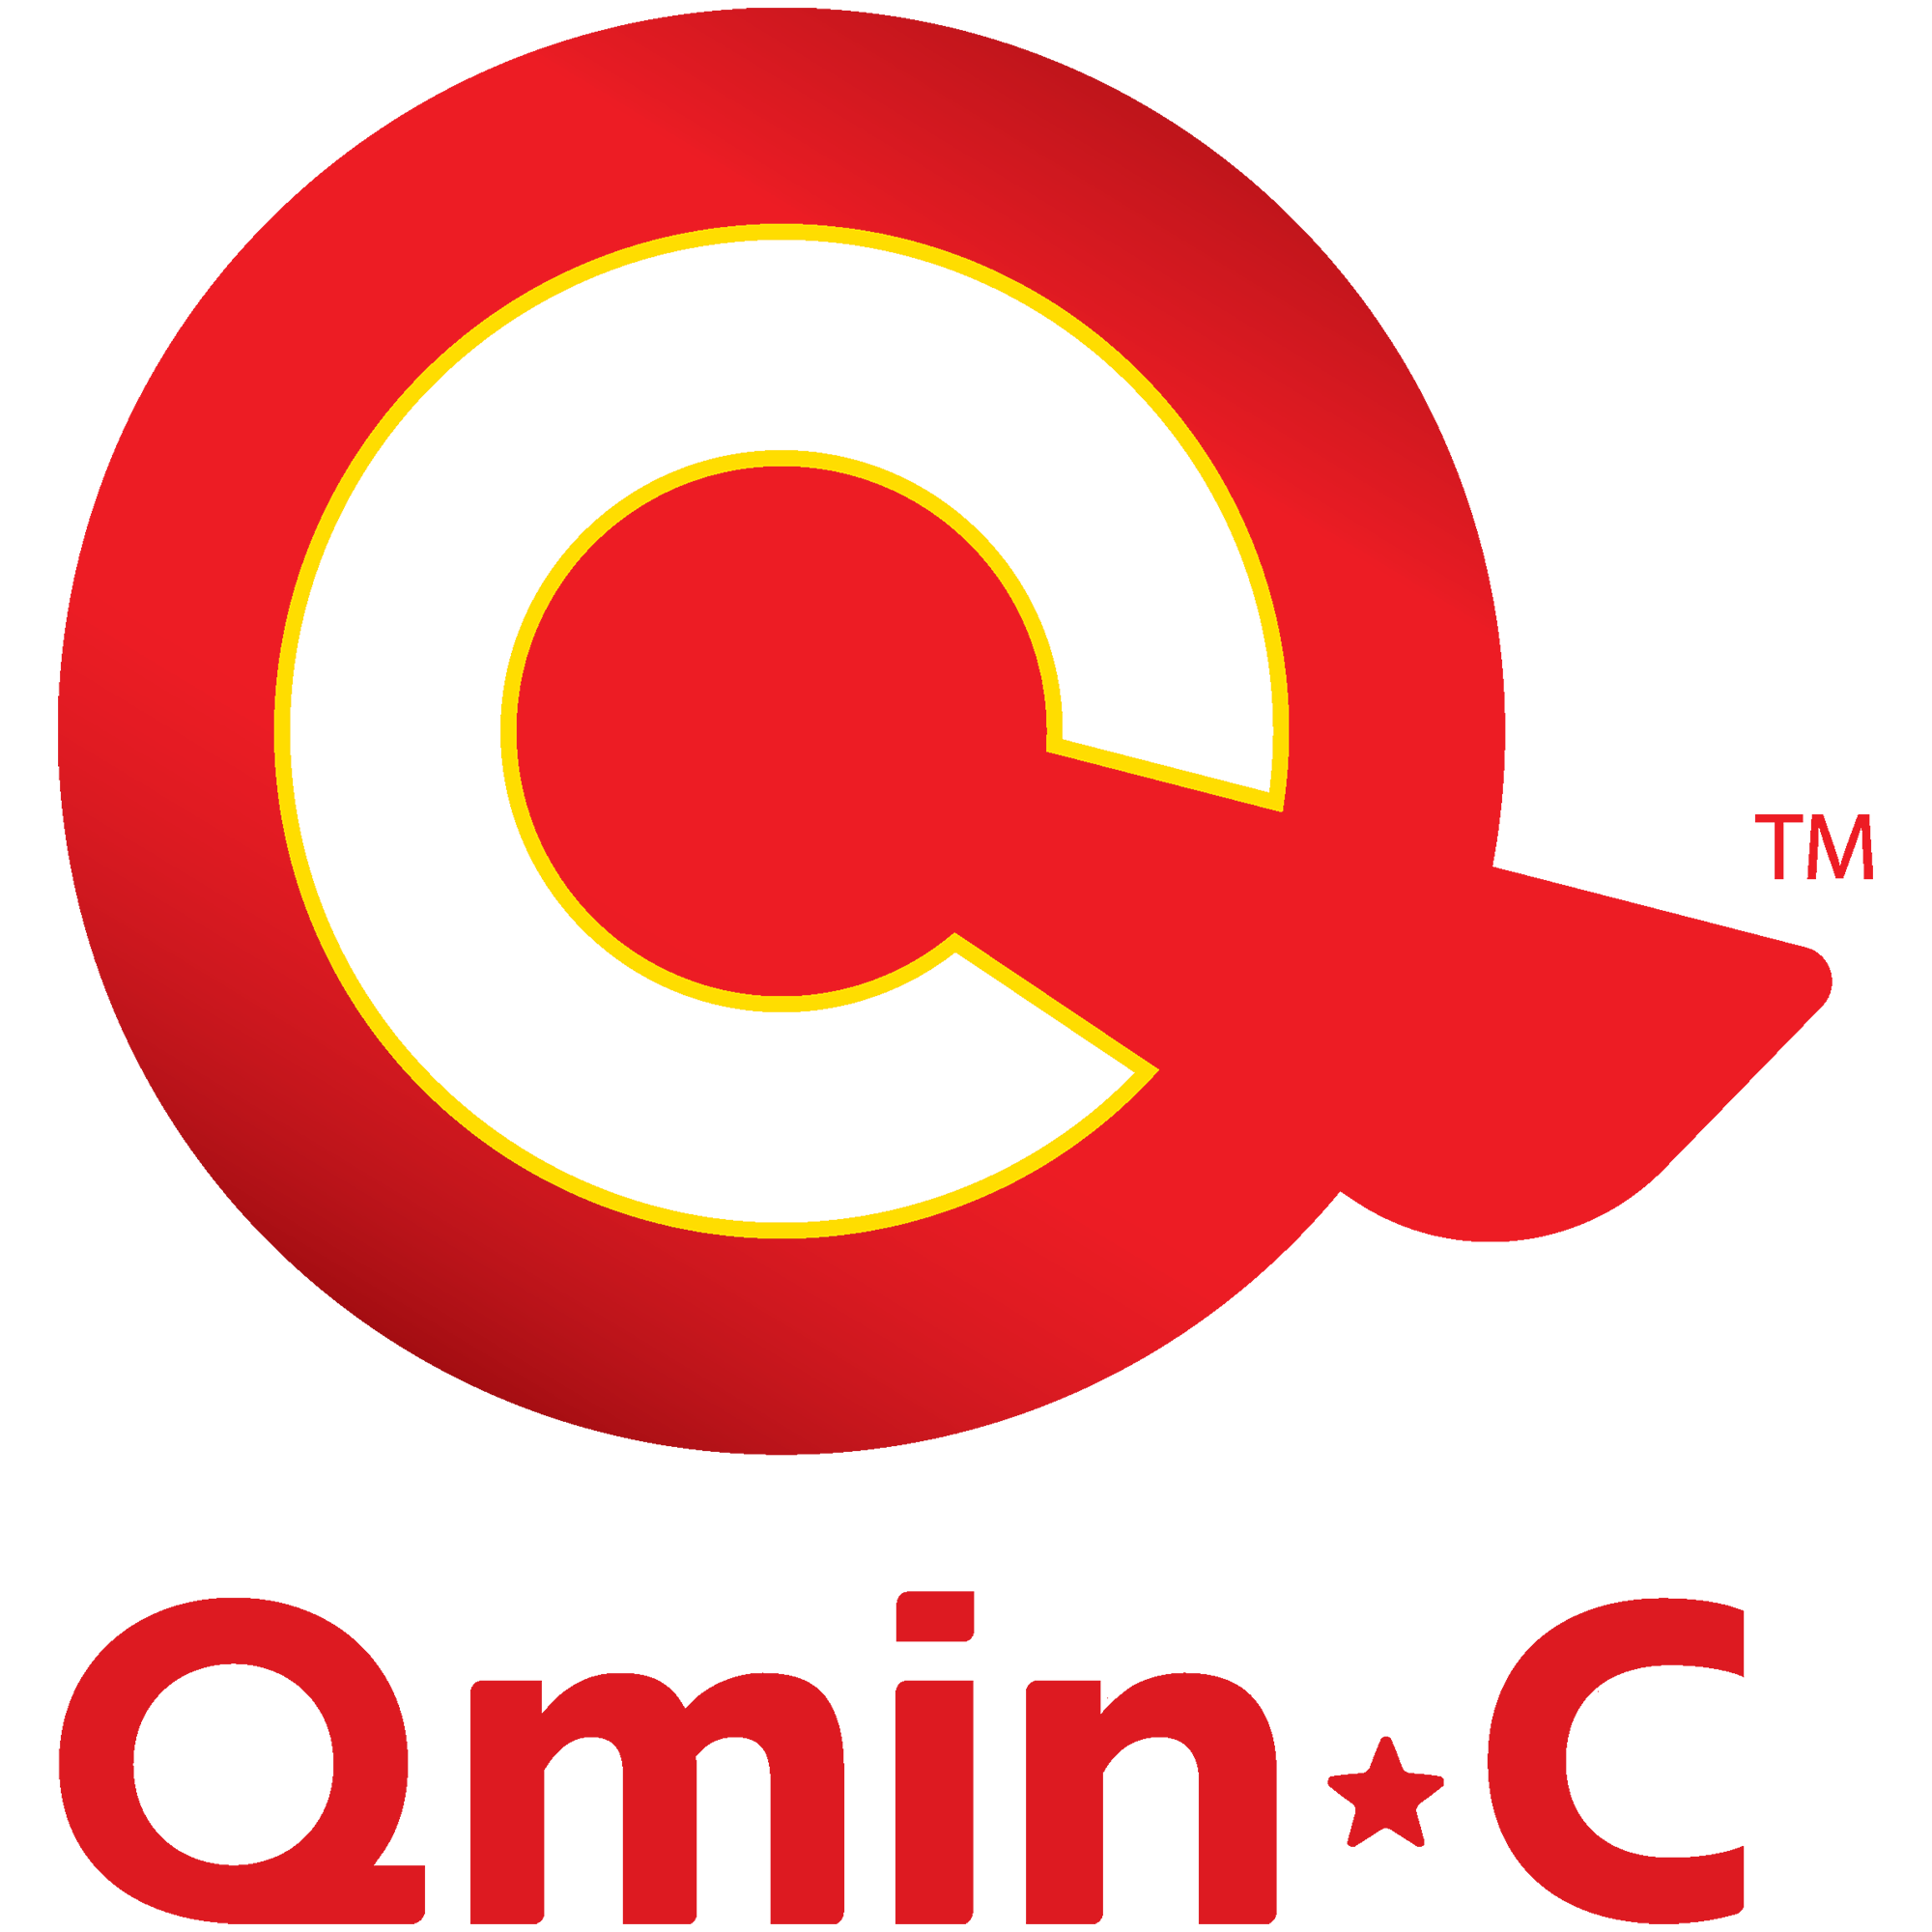 QminC